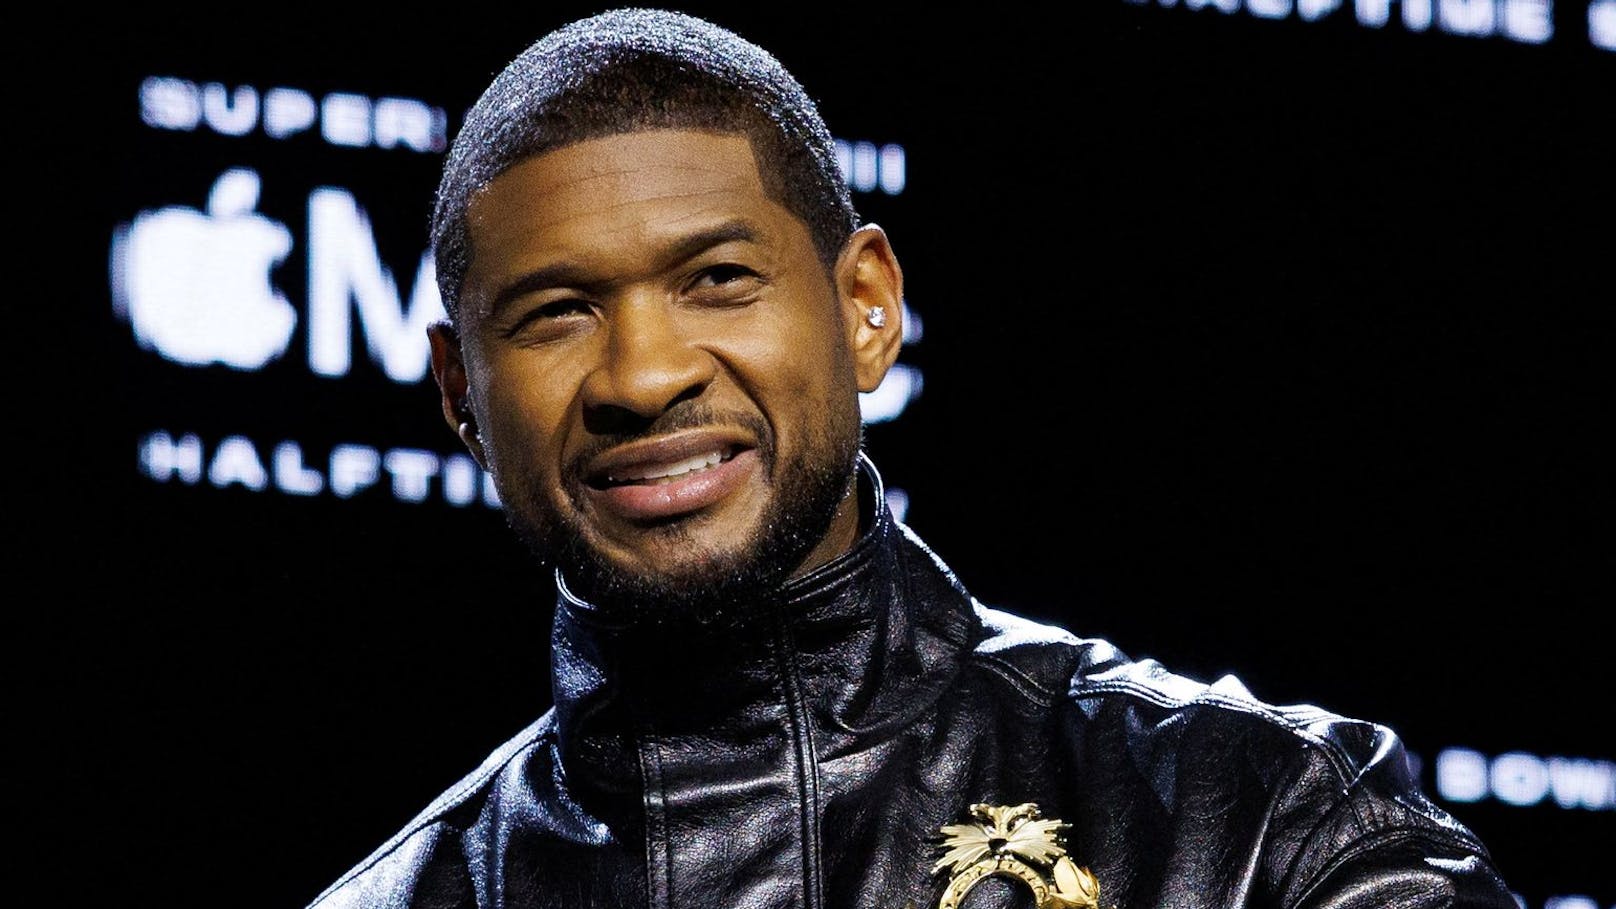 "Nach wilder Nacht verschwunden": Sorge um Usher?